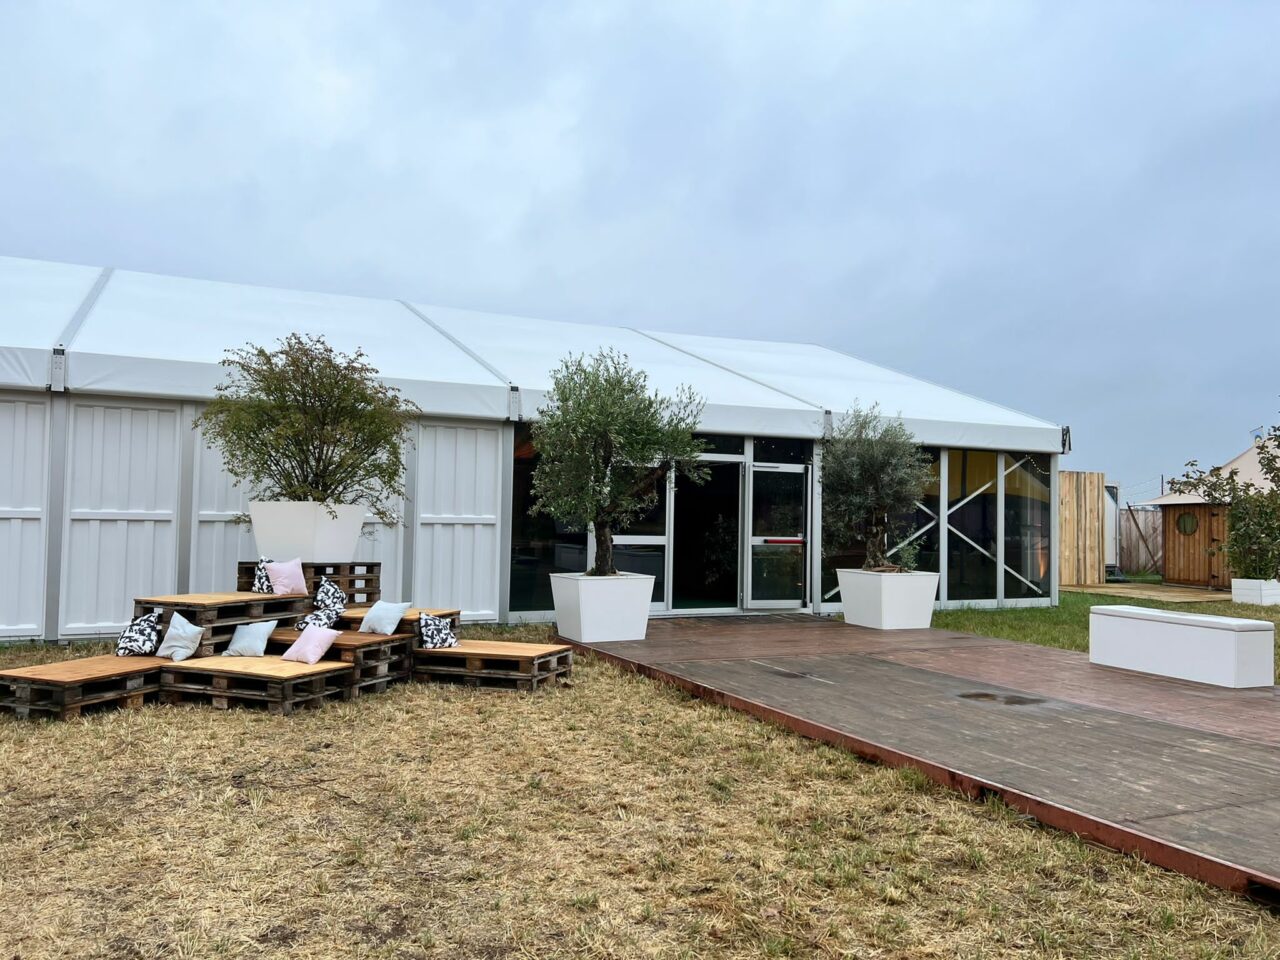 Zelthalle Alu Pavillon von Intersettle Zeltverleih - Zugang zu den VIP-Campingplätzen auf dem Parookaville Festival in Weeze 2022